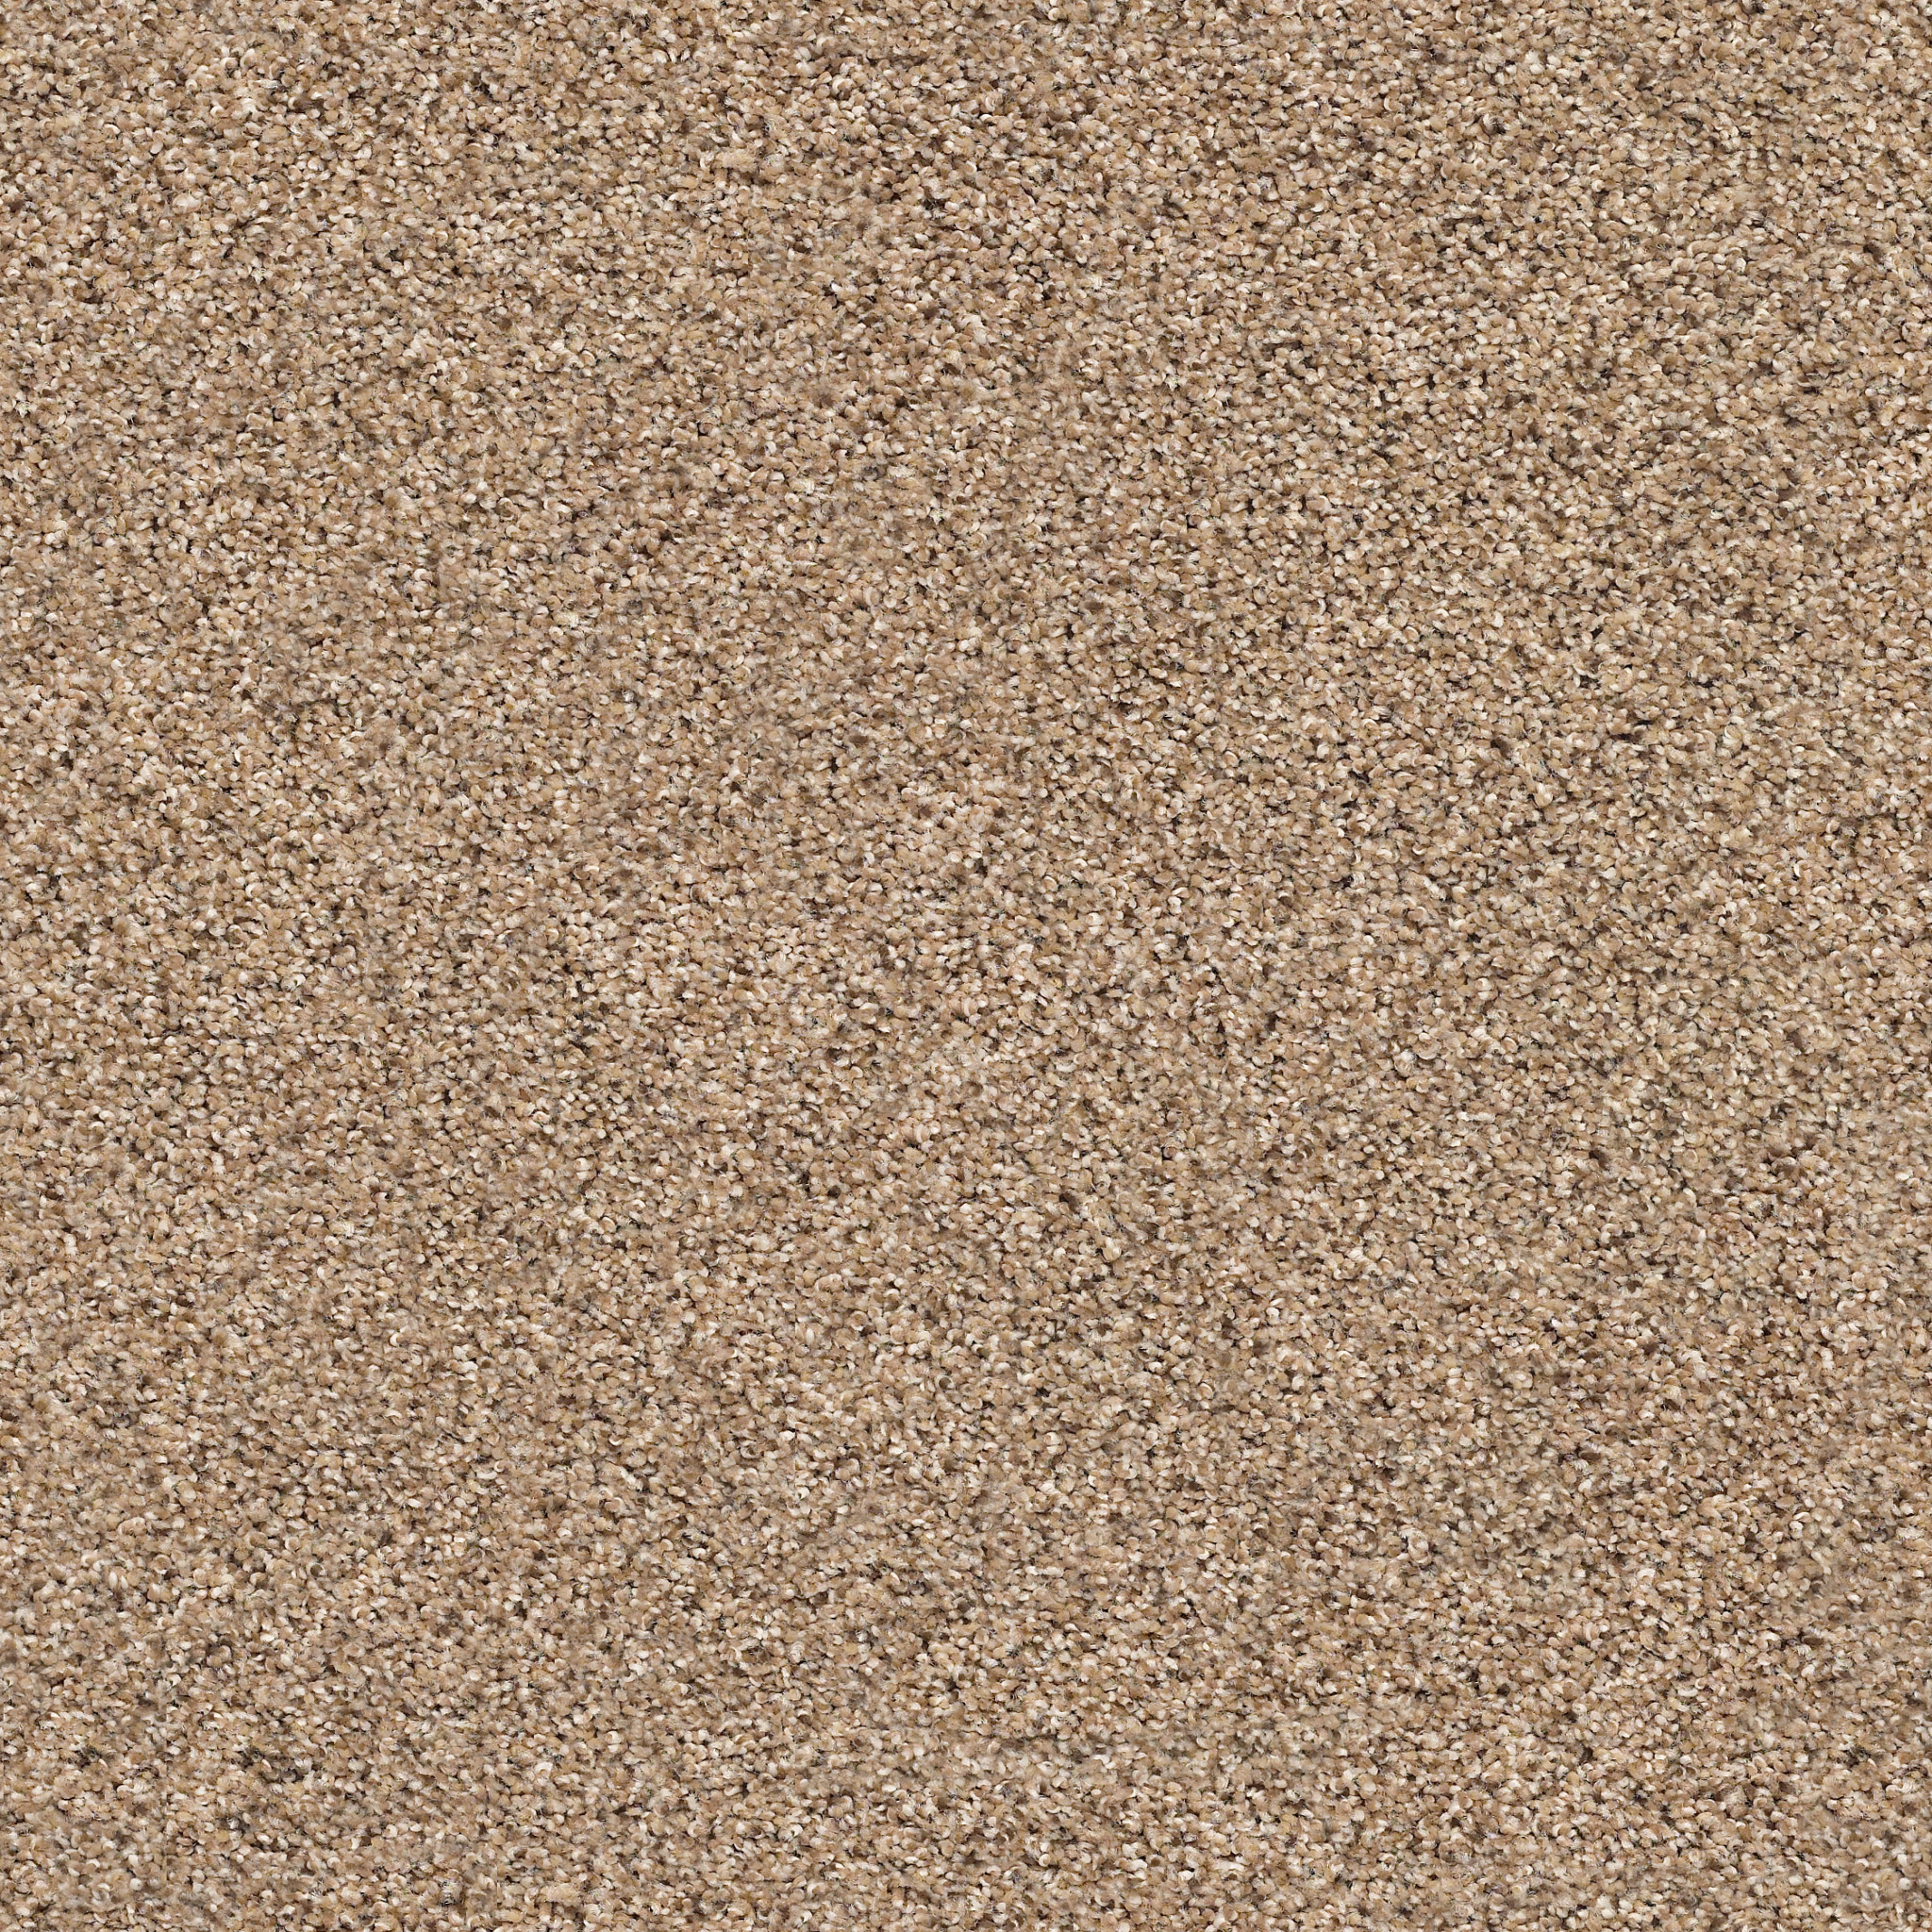 ELEMENTAL MIX II E9565 - ARROWHEAD | Carpets